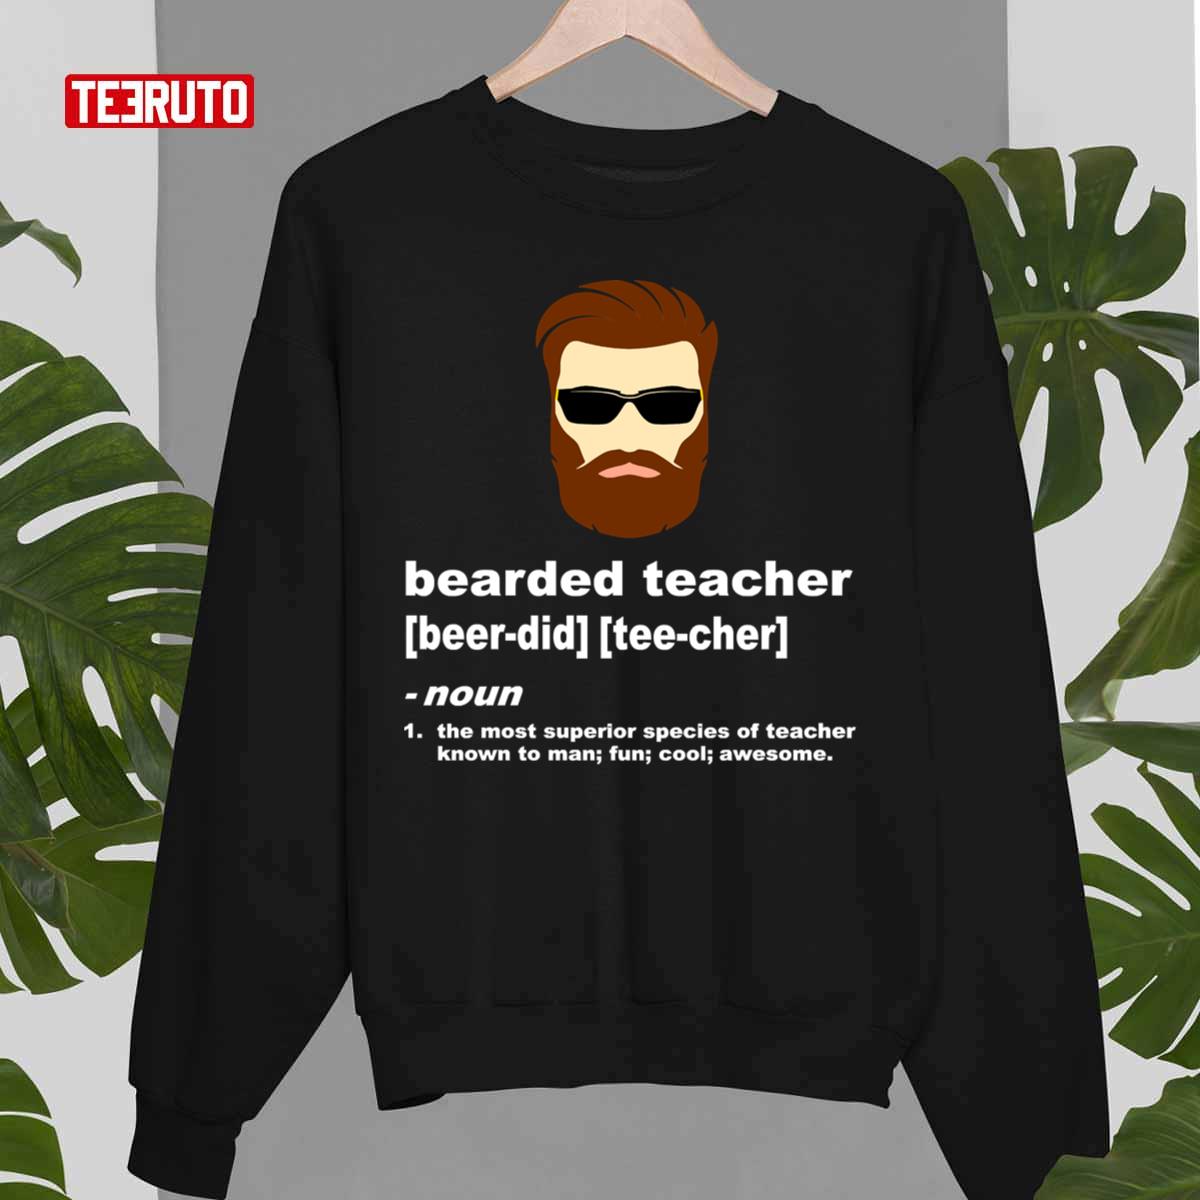 Funny Beard Teacher Shirt; Teacher Appreciation Gift For Men Unisex T-Shirt